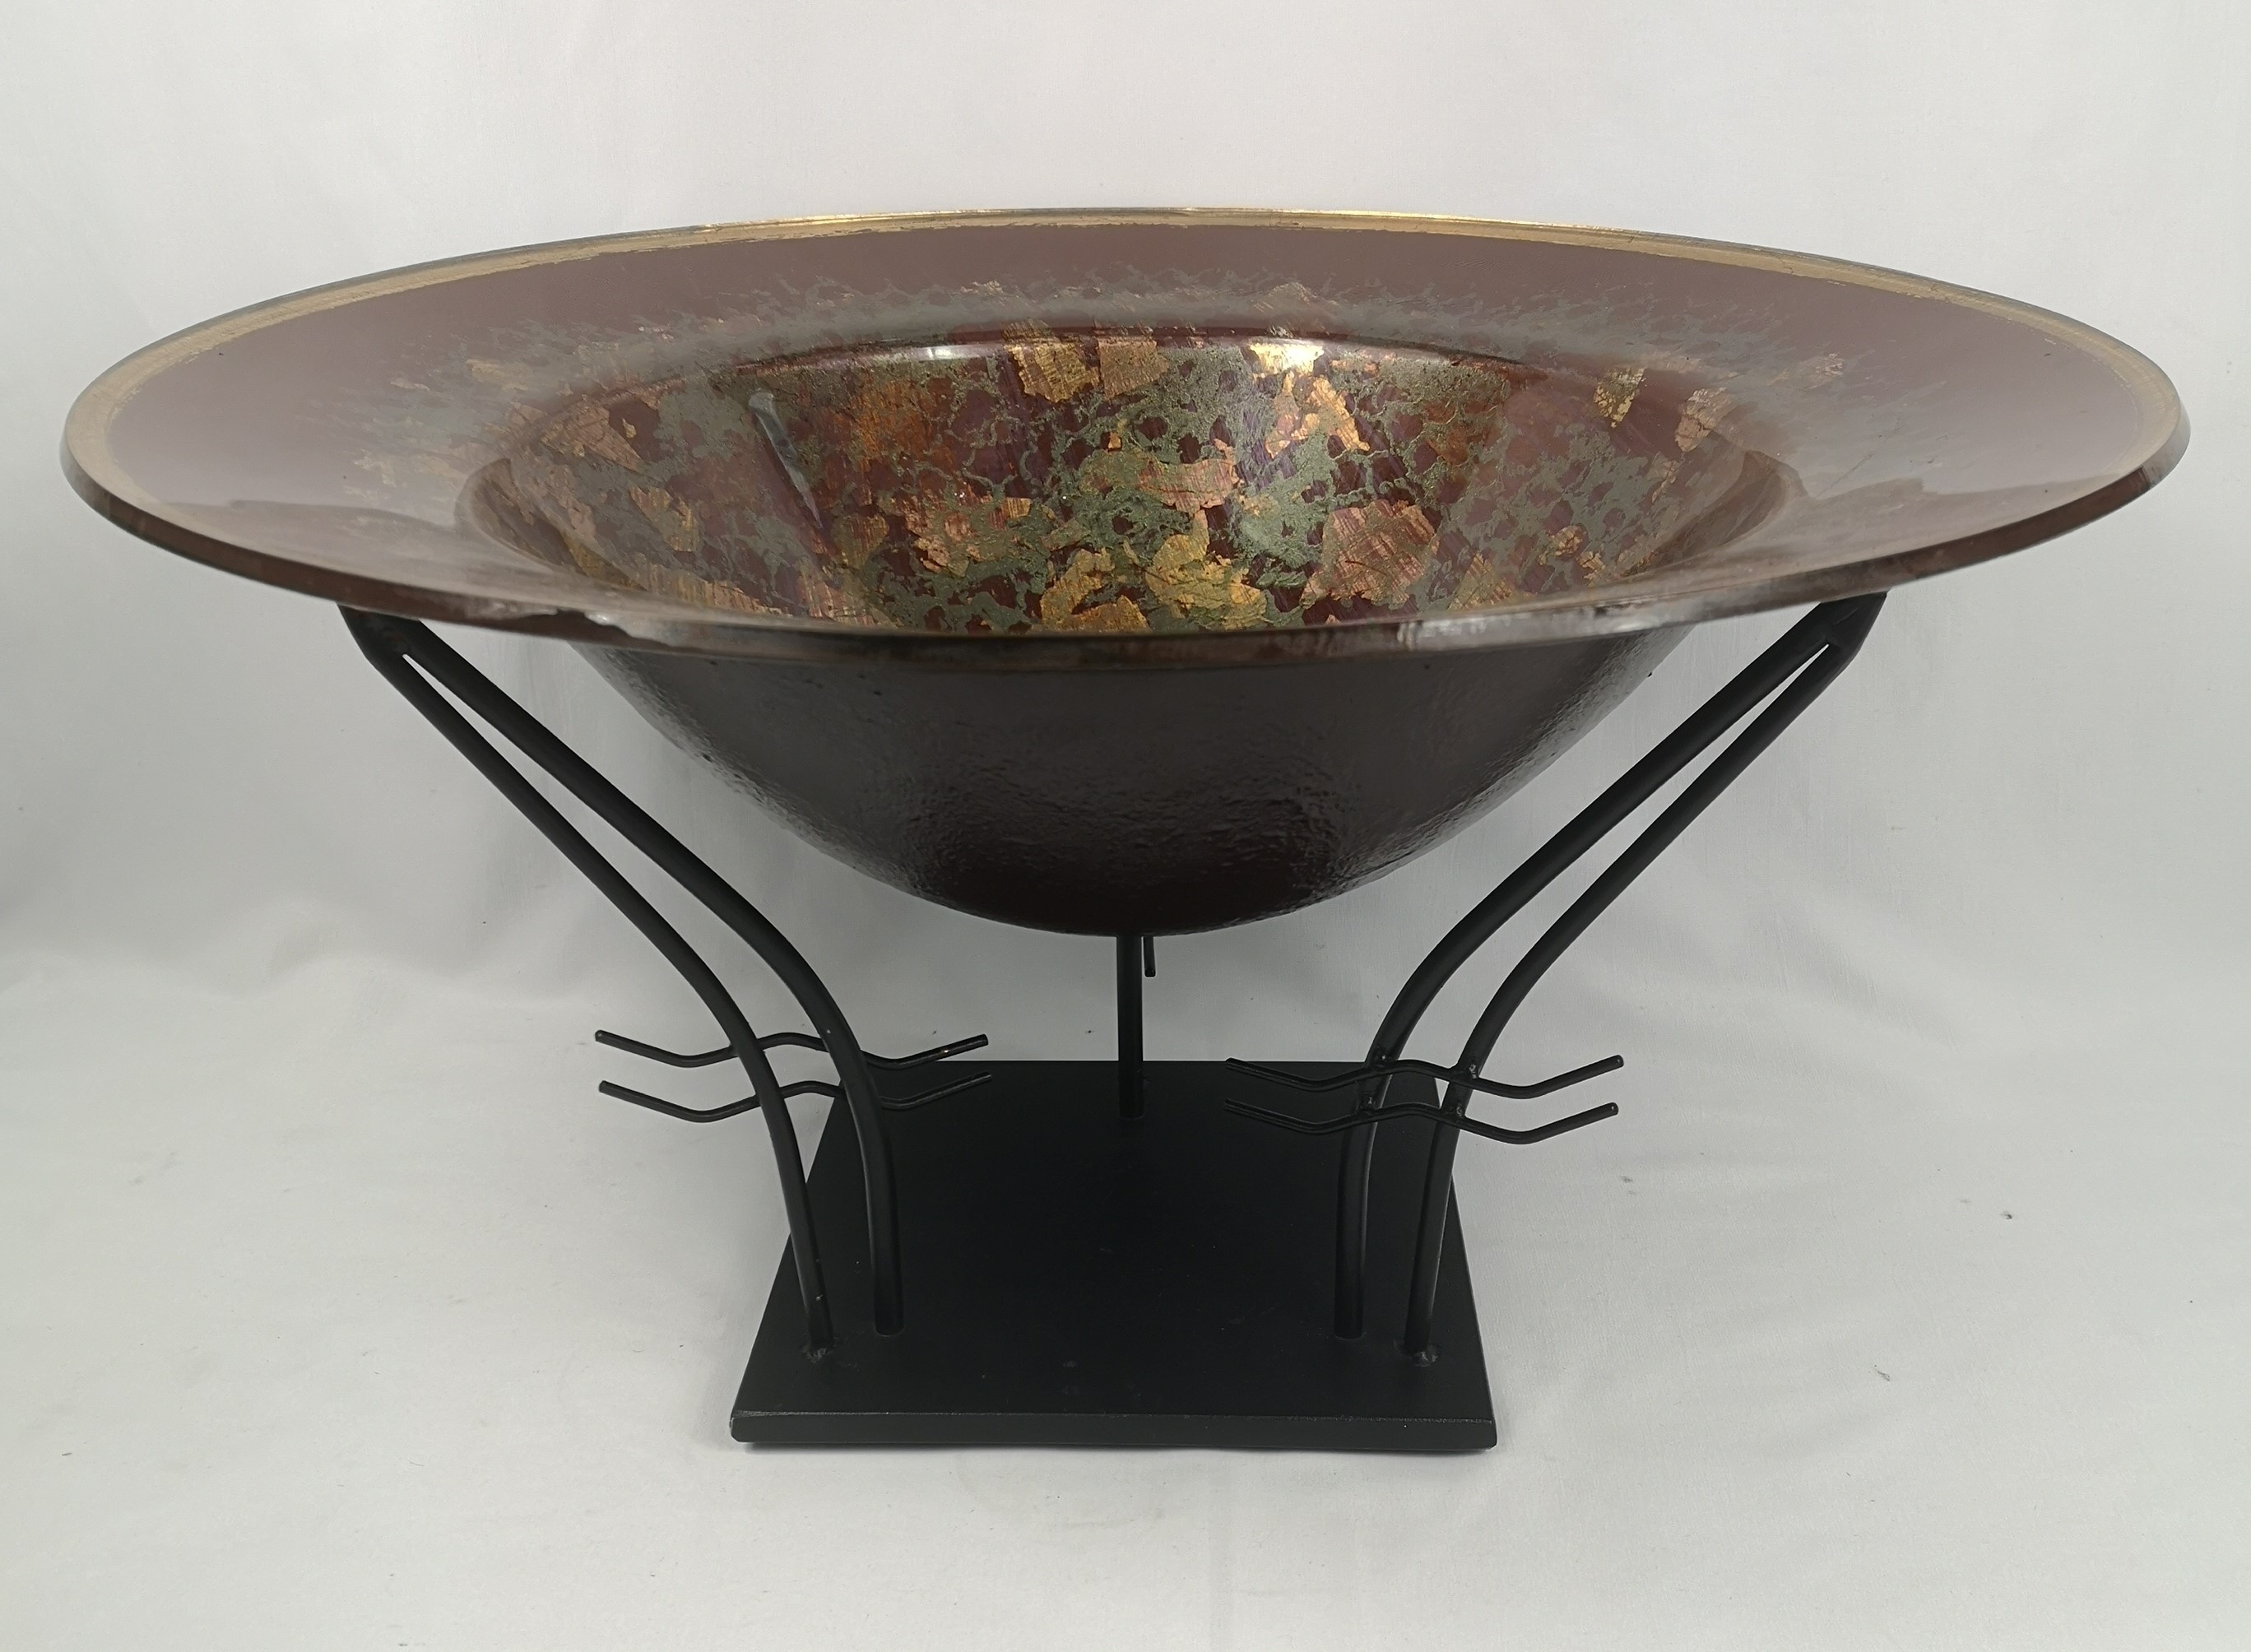 Art glass bowl on metal stand